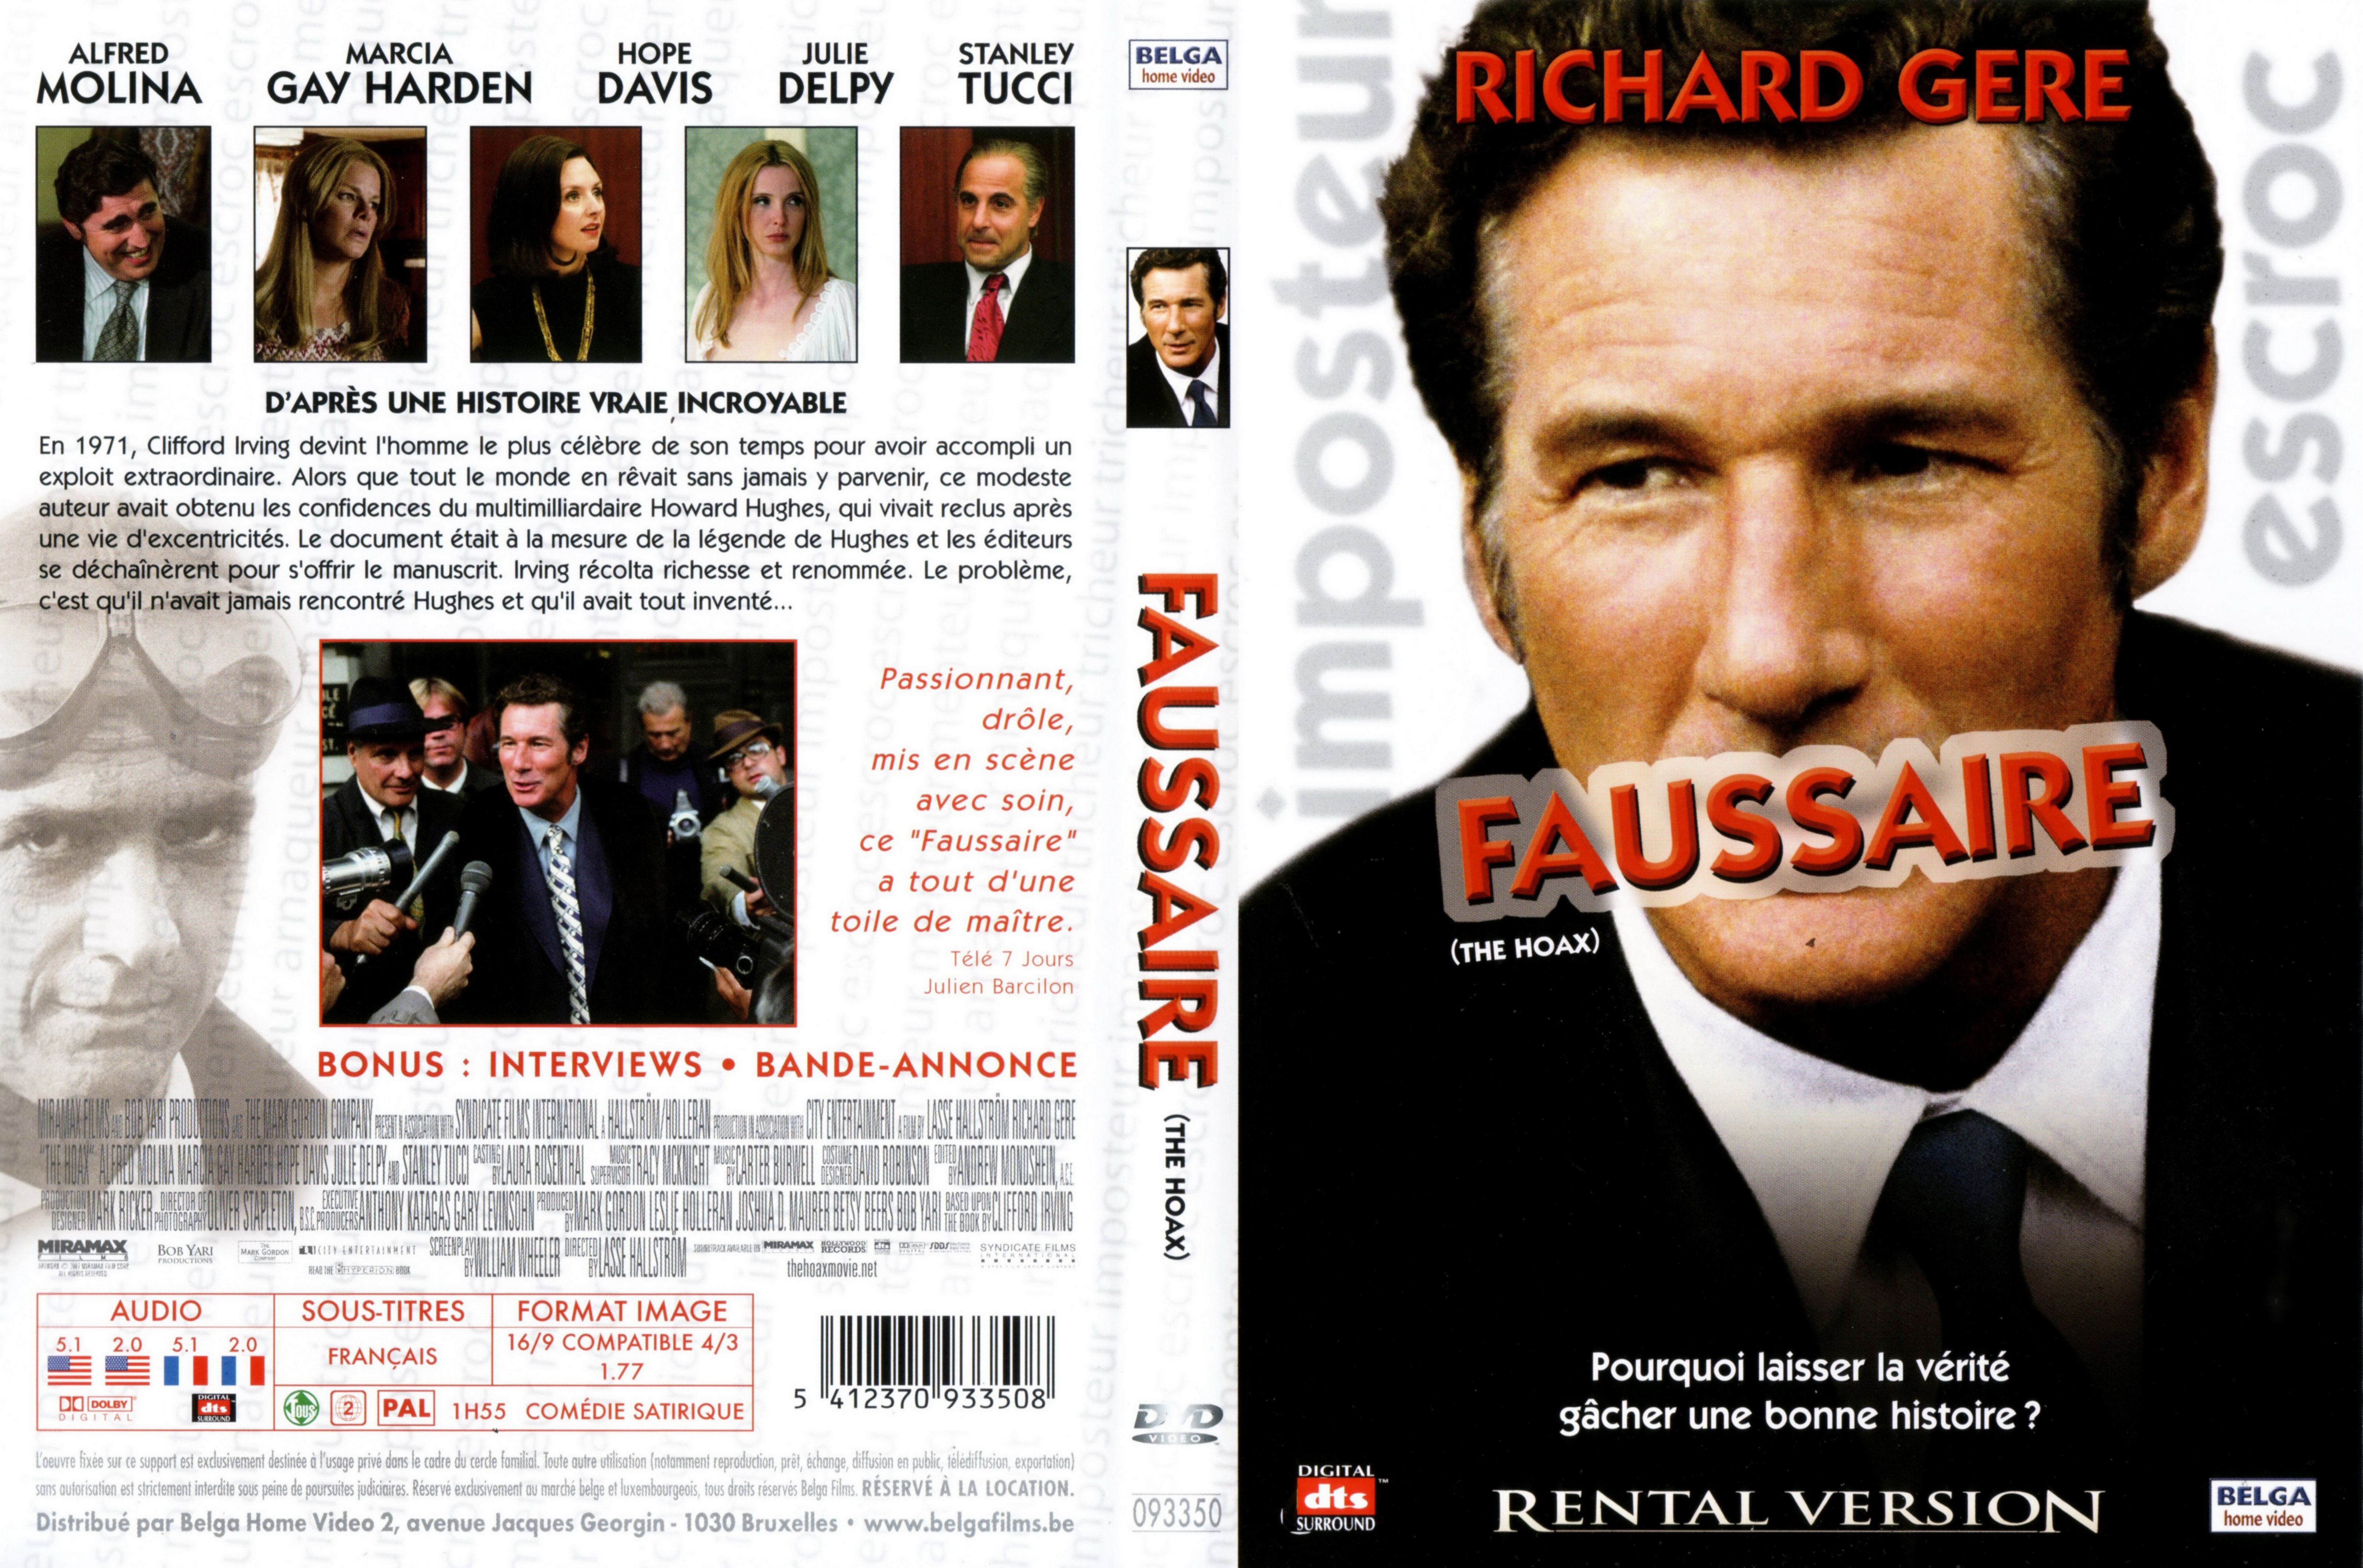 Jaquette DVD Faussaire v2